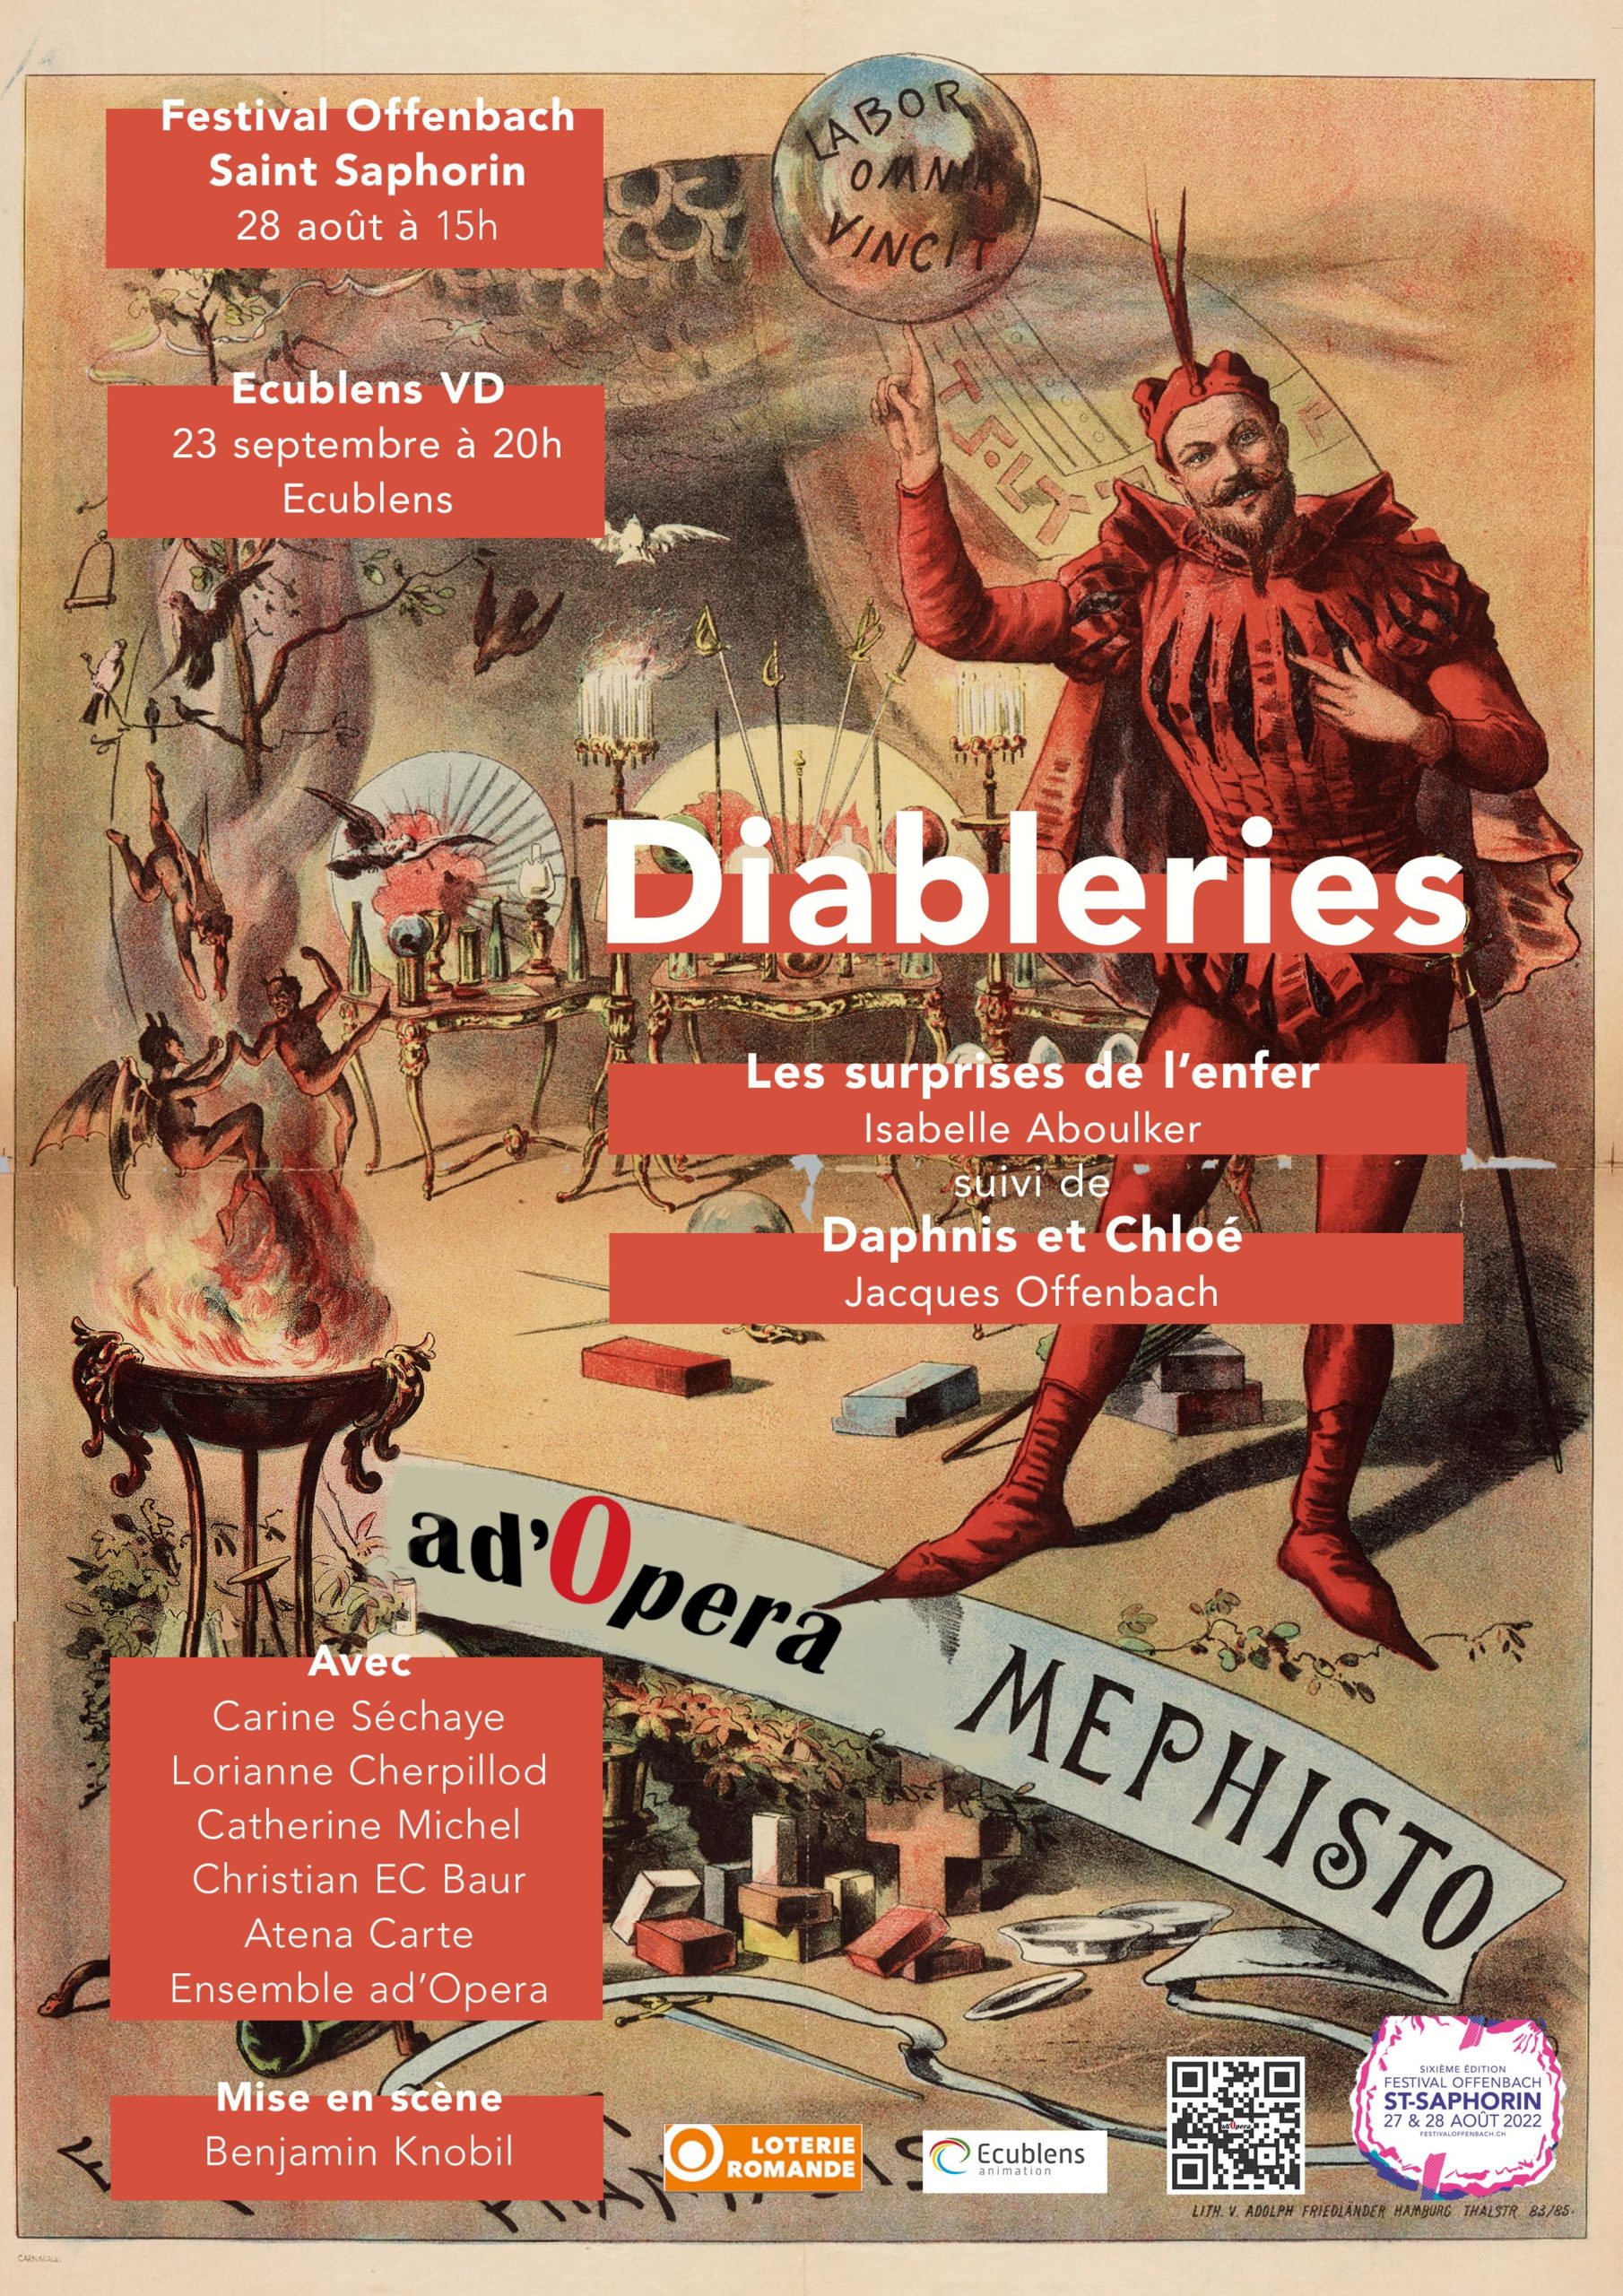 Diableries : Les Surprises de l’enfer – Daphnis et Chloé